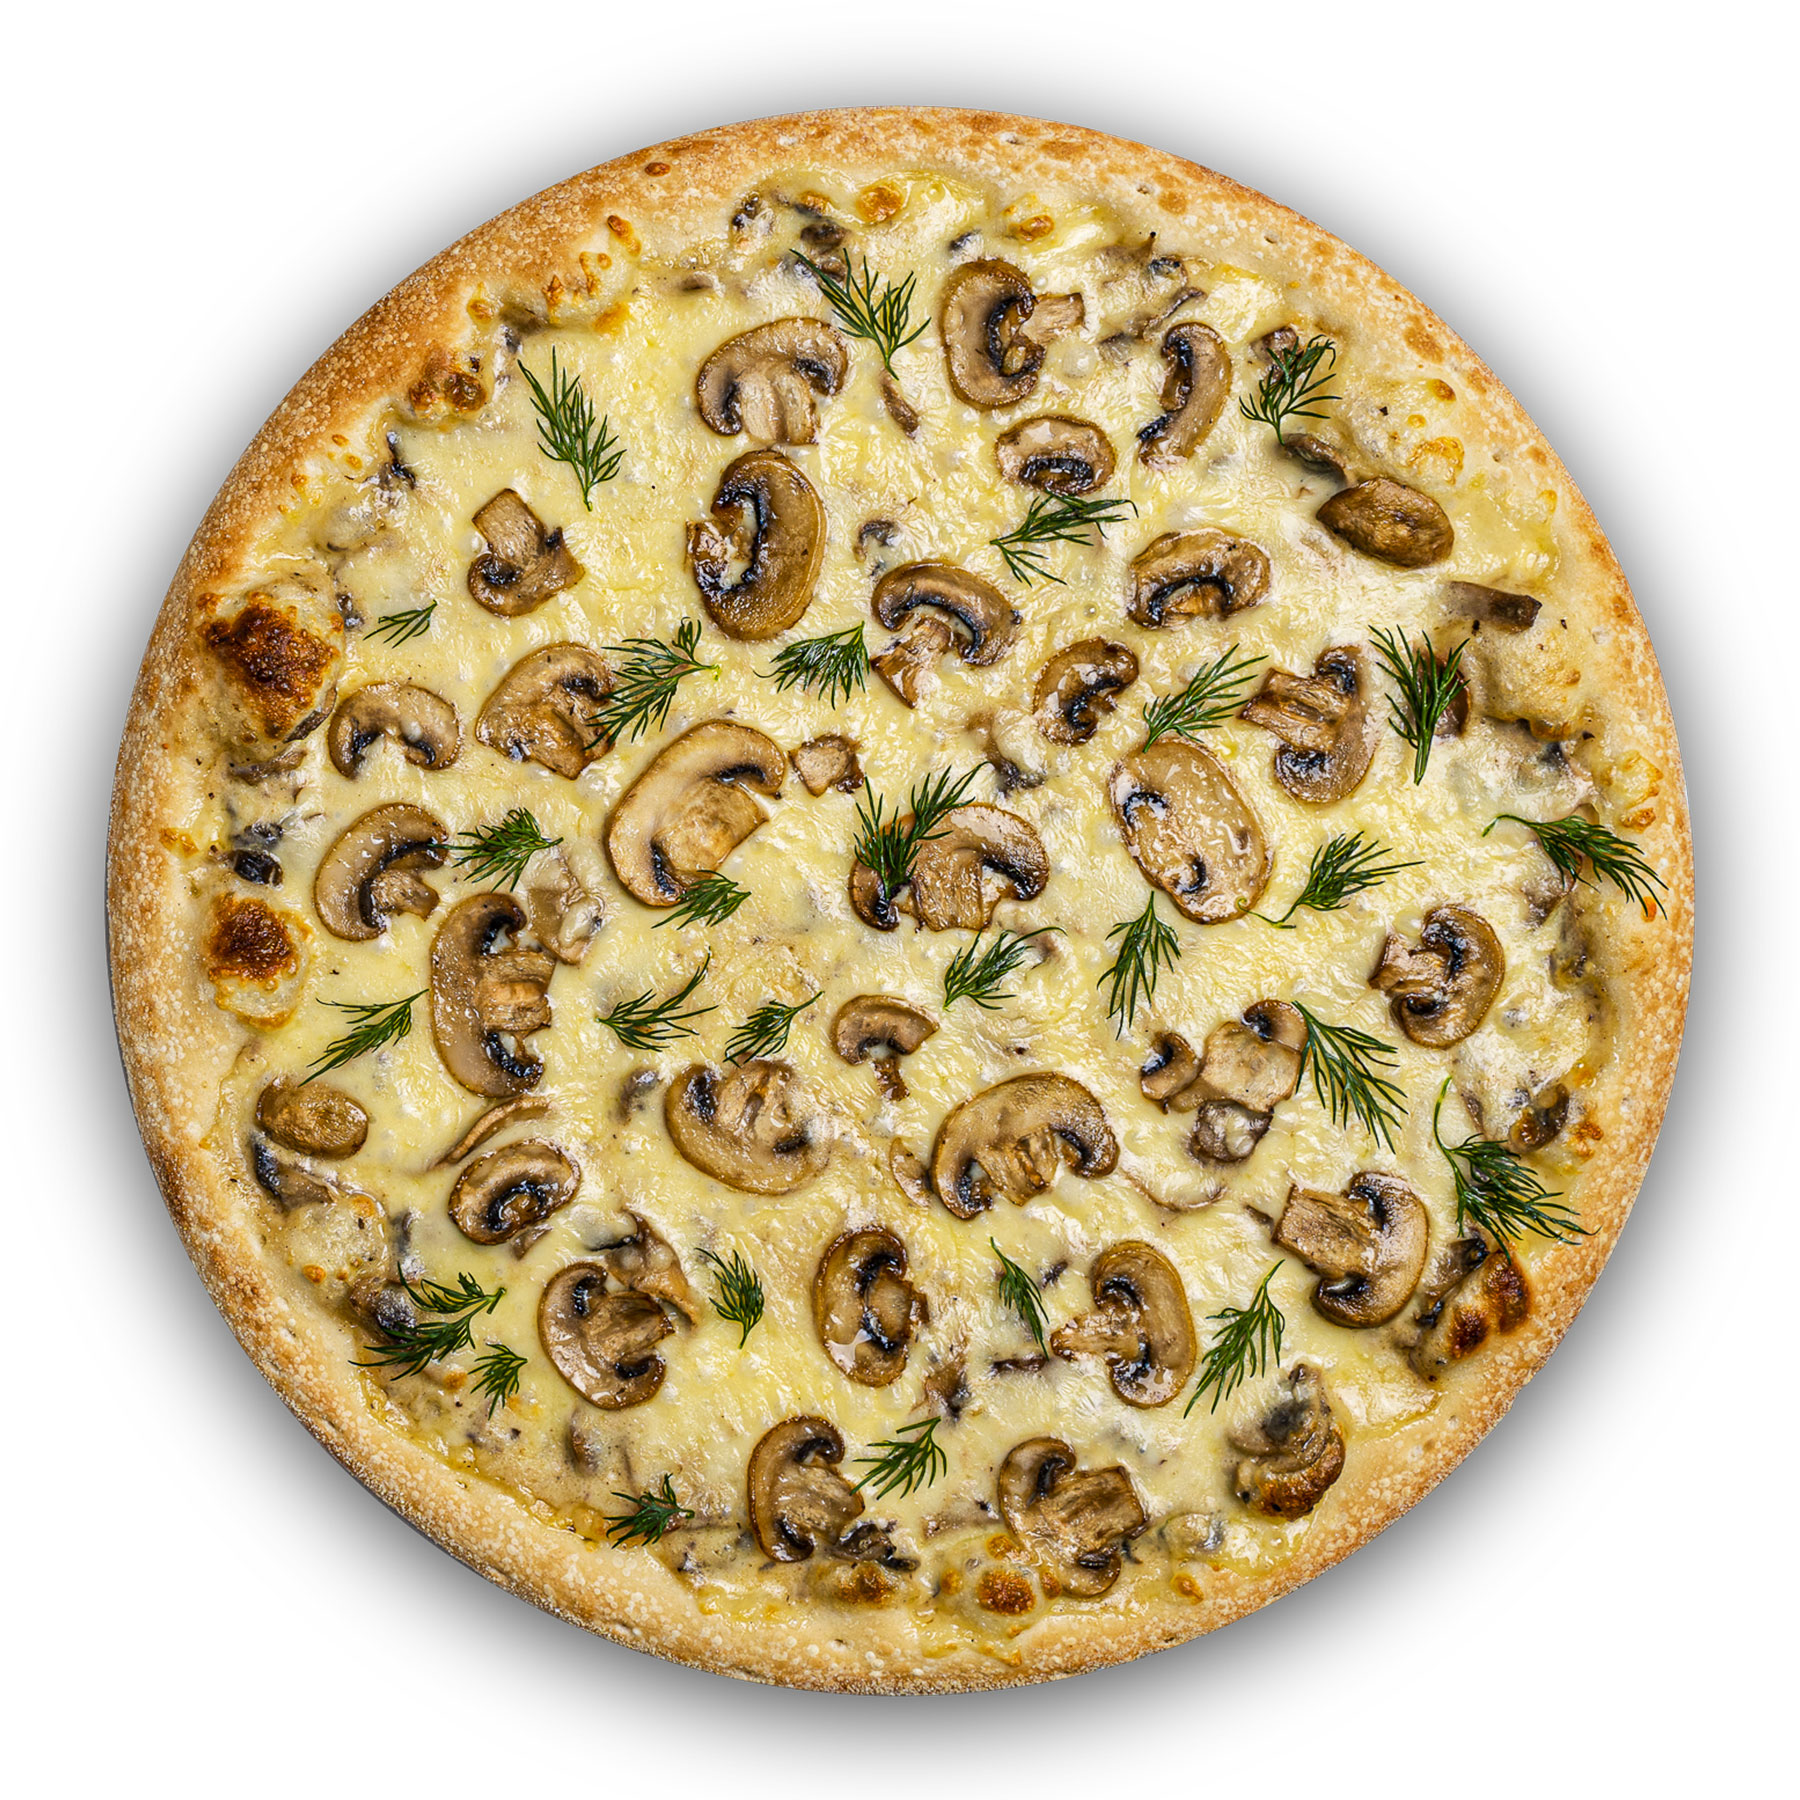 грибная пицца с шампиньонами как в пиццерии (120) фото